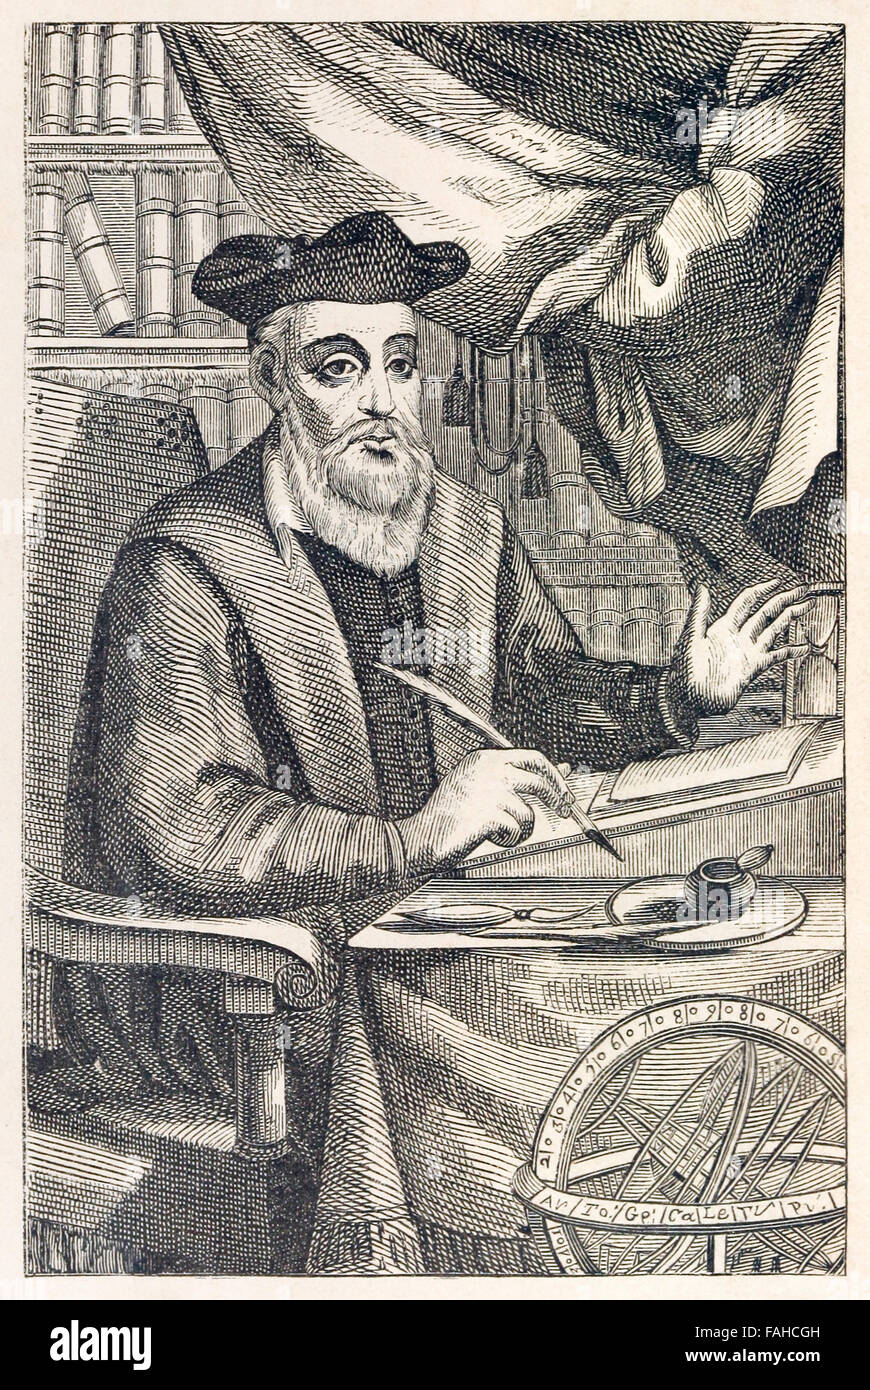 Nostradamus (1503-1566) écrit ses prophéties, frontispice d'une édition 1611 de 'Les Propheties de M. Michel Nostradamvs'. Voir la description pour plus d'informations. Banque D'Images